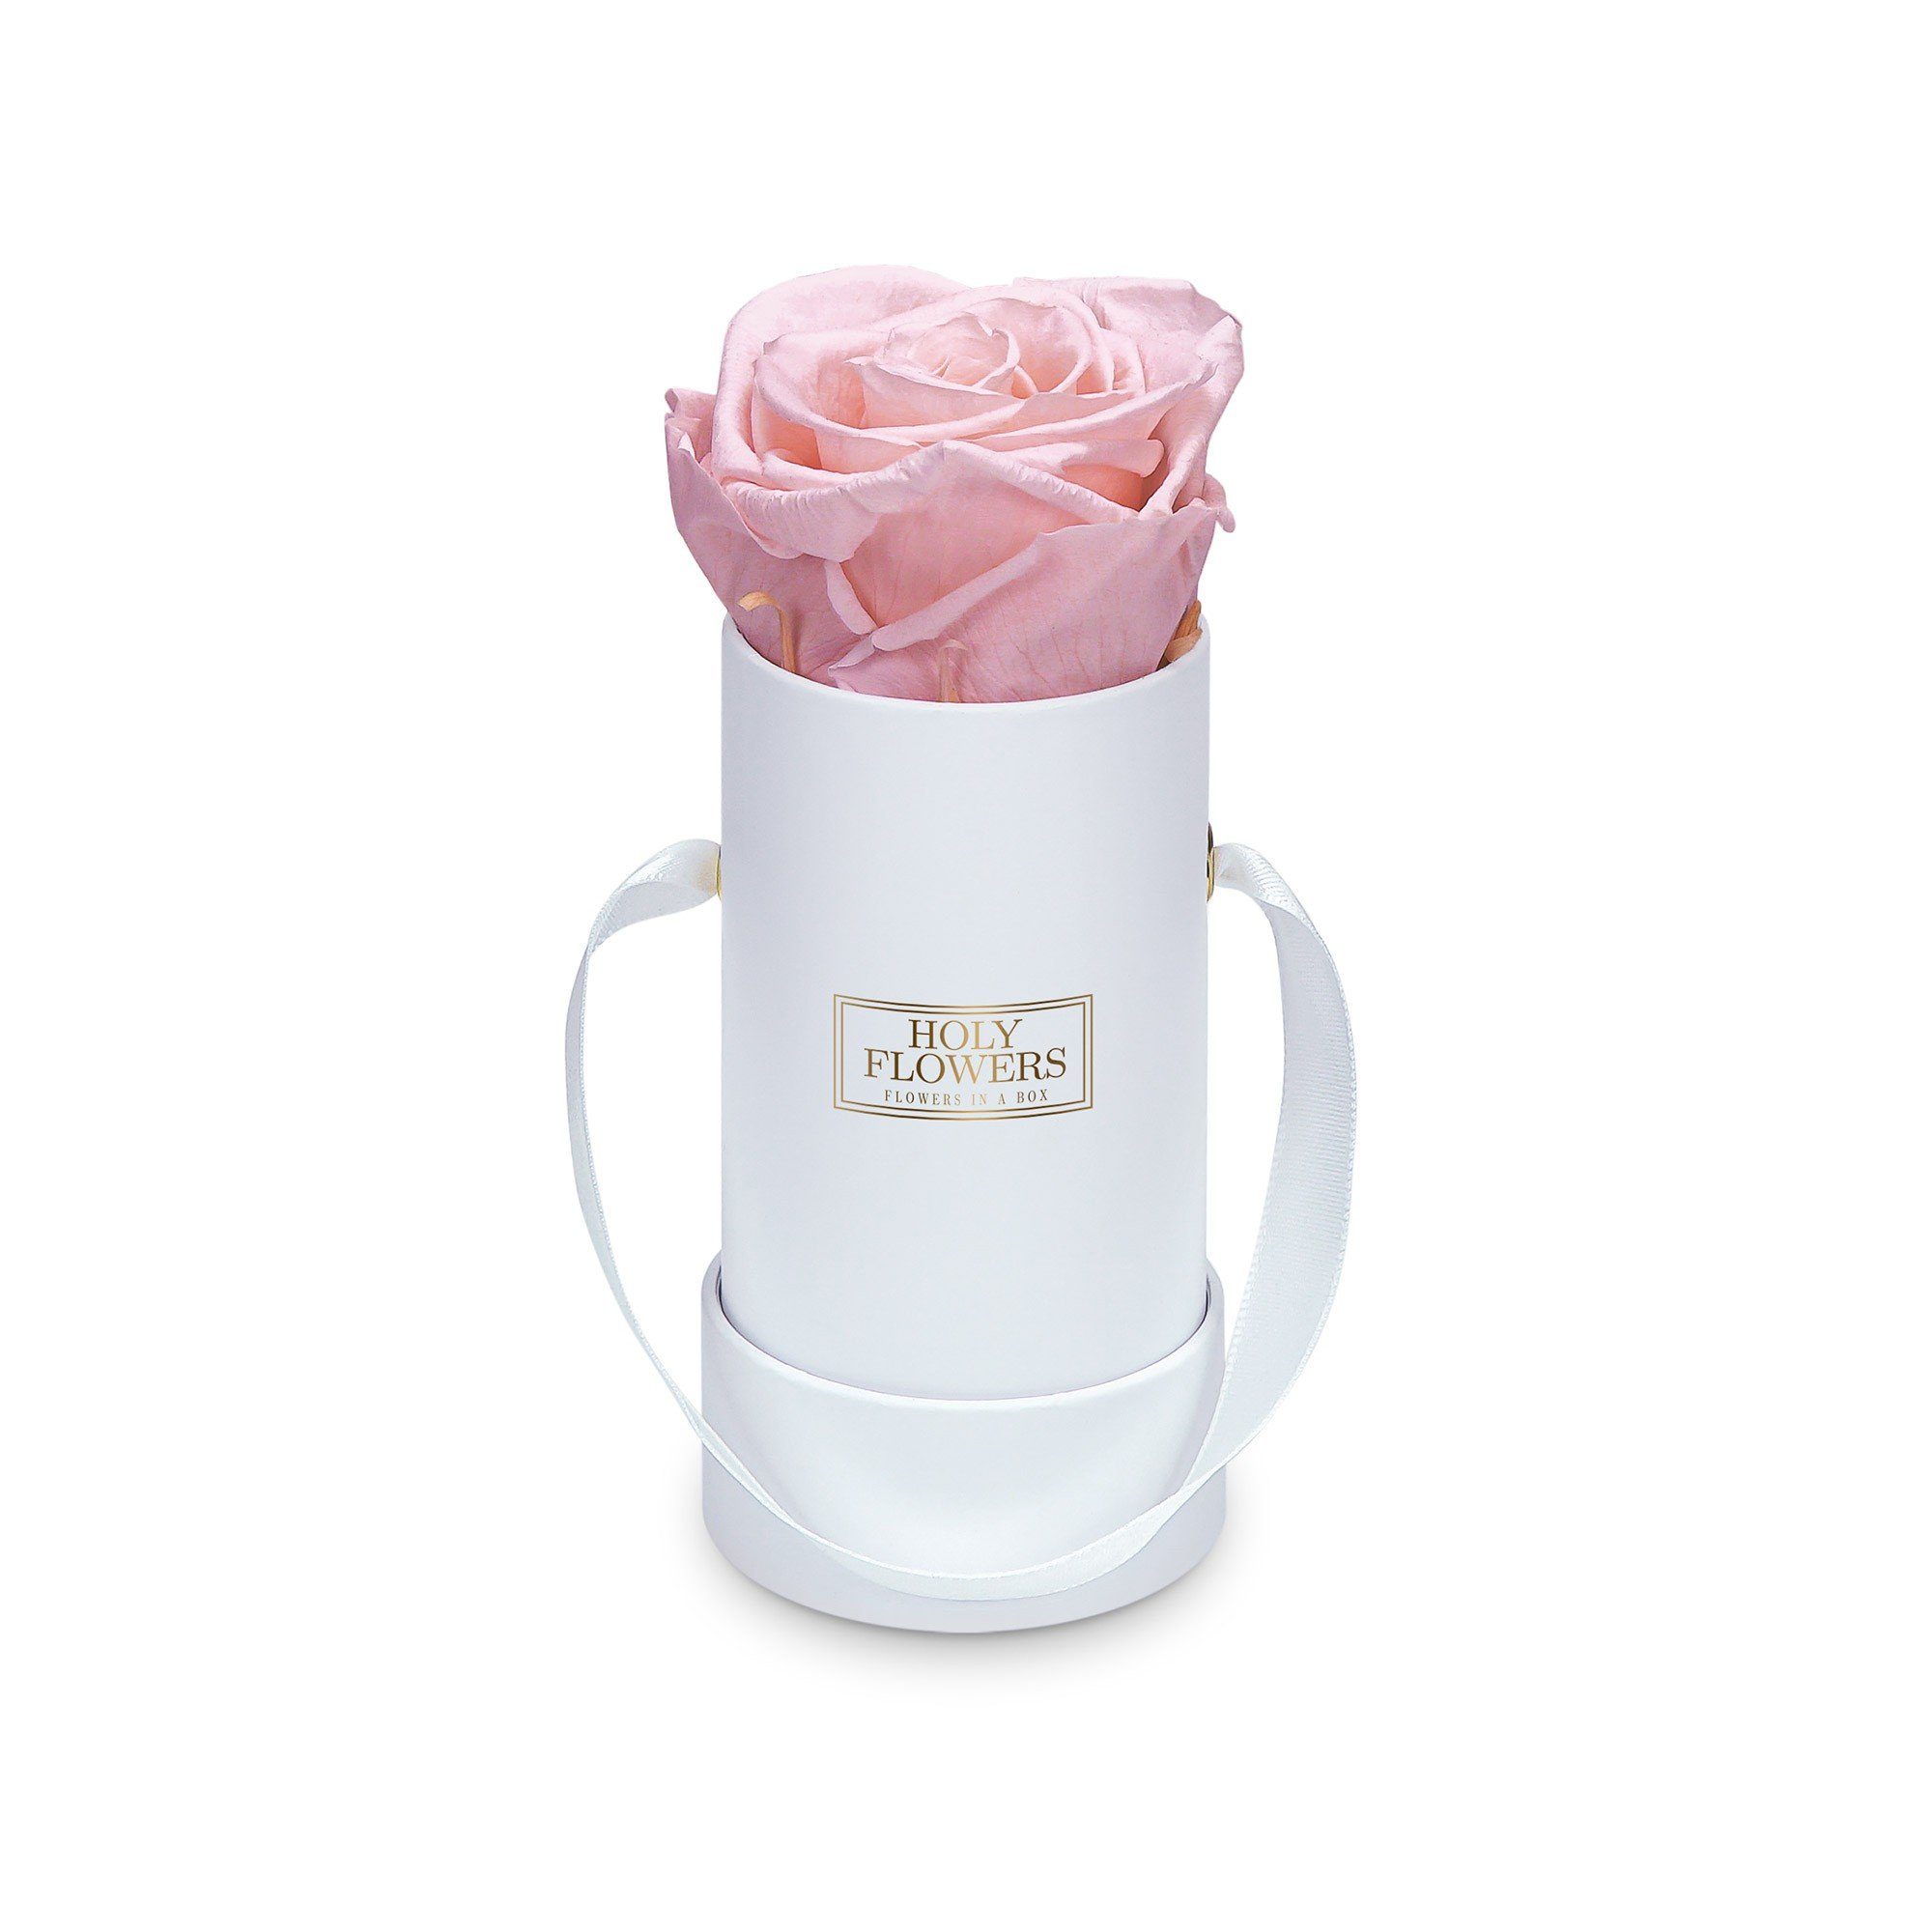 Kunstblume Runde Rosenbox in weiß mit 1er Infinity Rose I 3 Jahre haltbar I Echte, duftende konservierte Blumen I by Raul Richter Infinity Rose, Holy Flowers, Höhe 9 cm Pink Blush